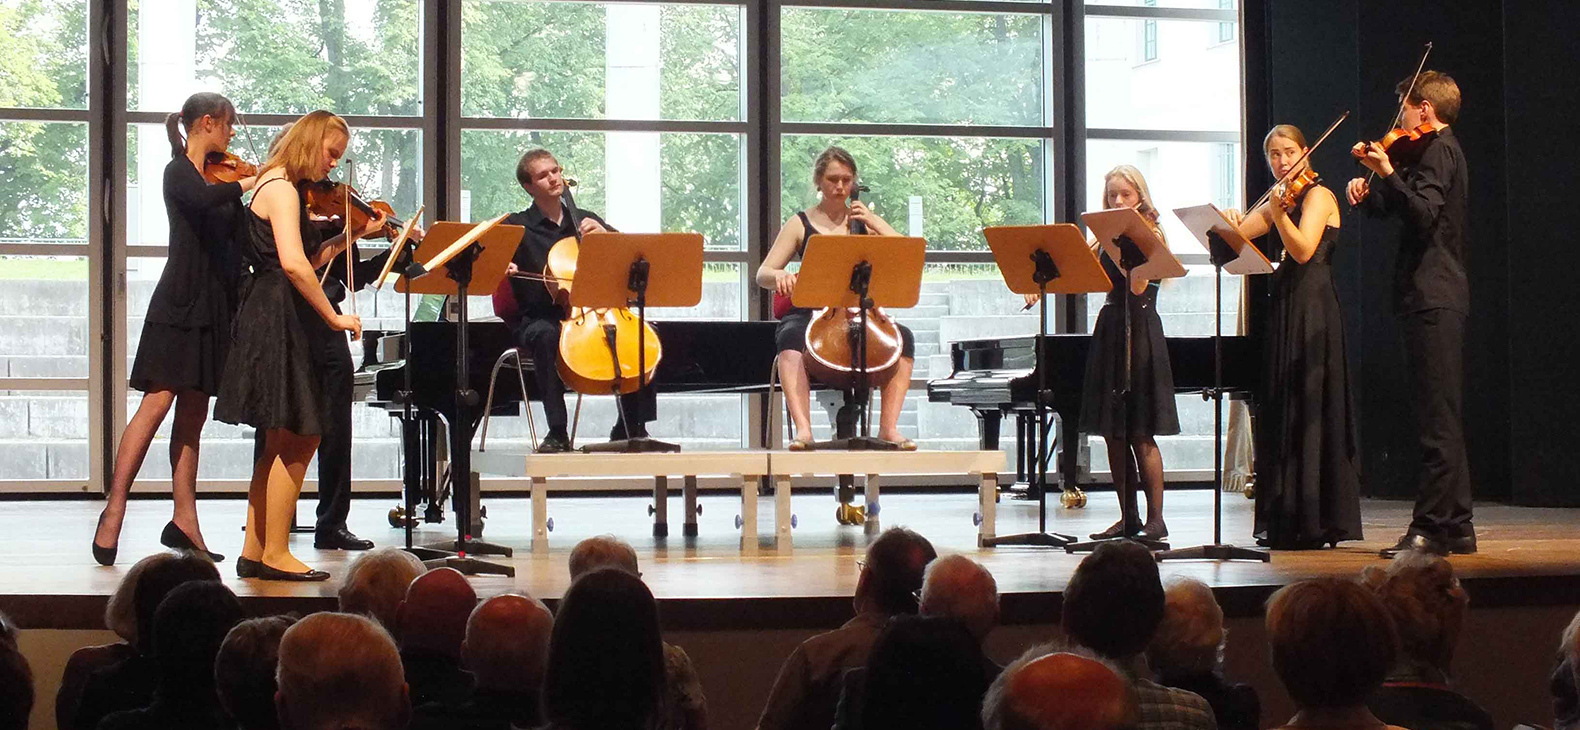 Ein Streich-Orchester mit jungen schwarz-gekleideten Musikerinnen und Musikern spielt auf einer Bühne vor einer Glasfront. Im Vordergrund erkennt man die Köpfe der Zuhörer